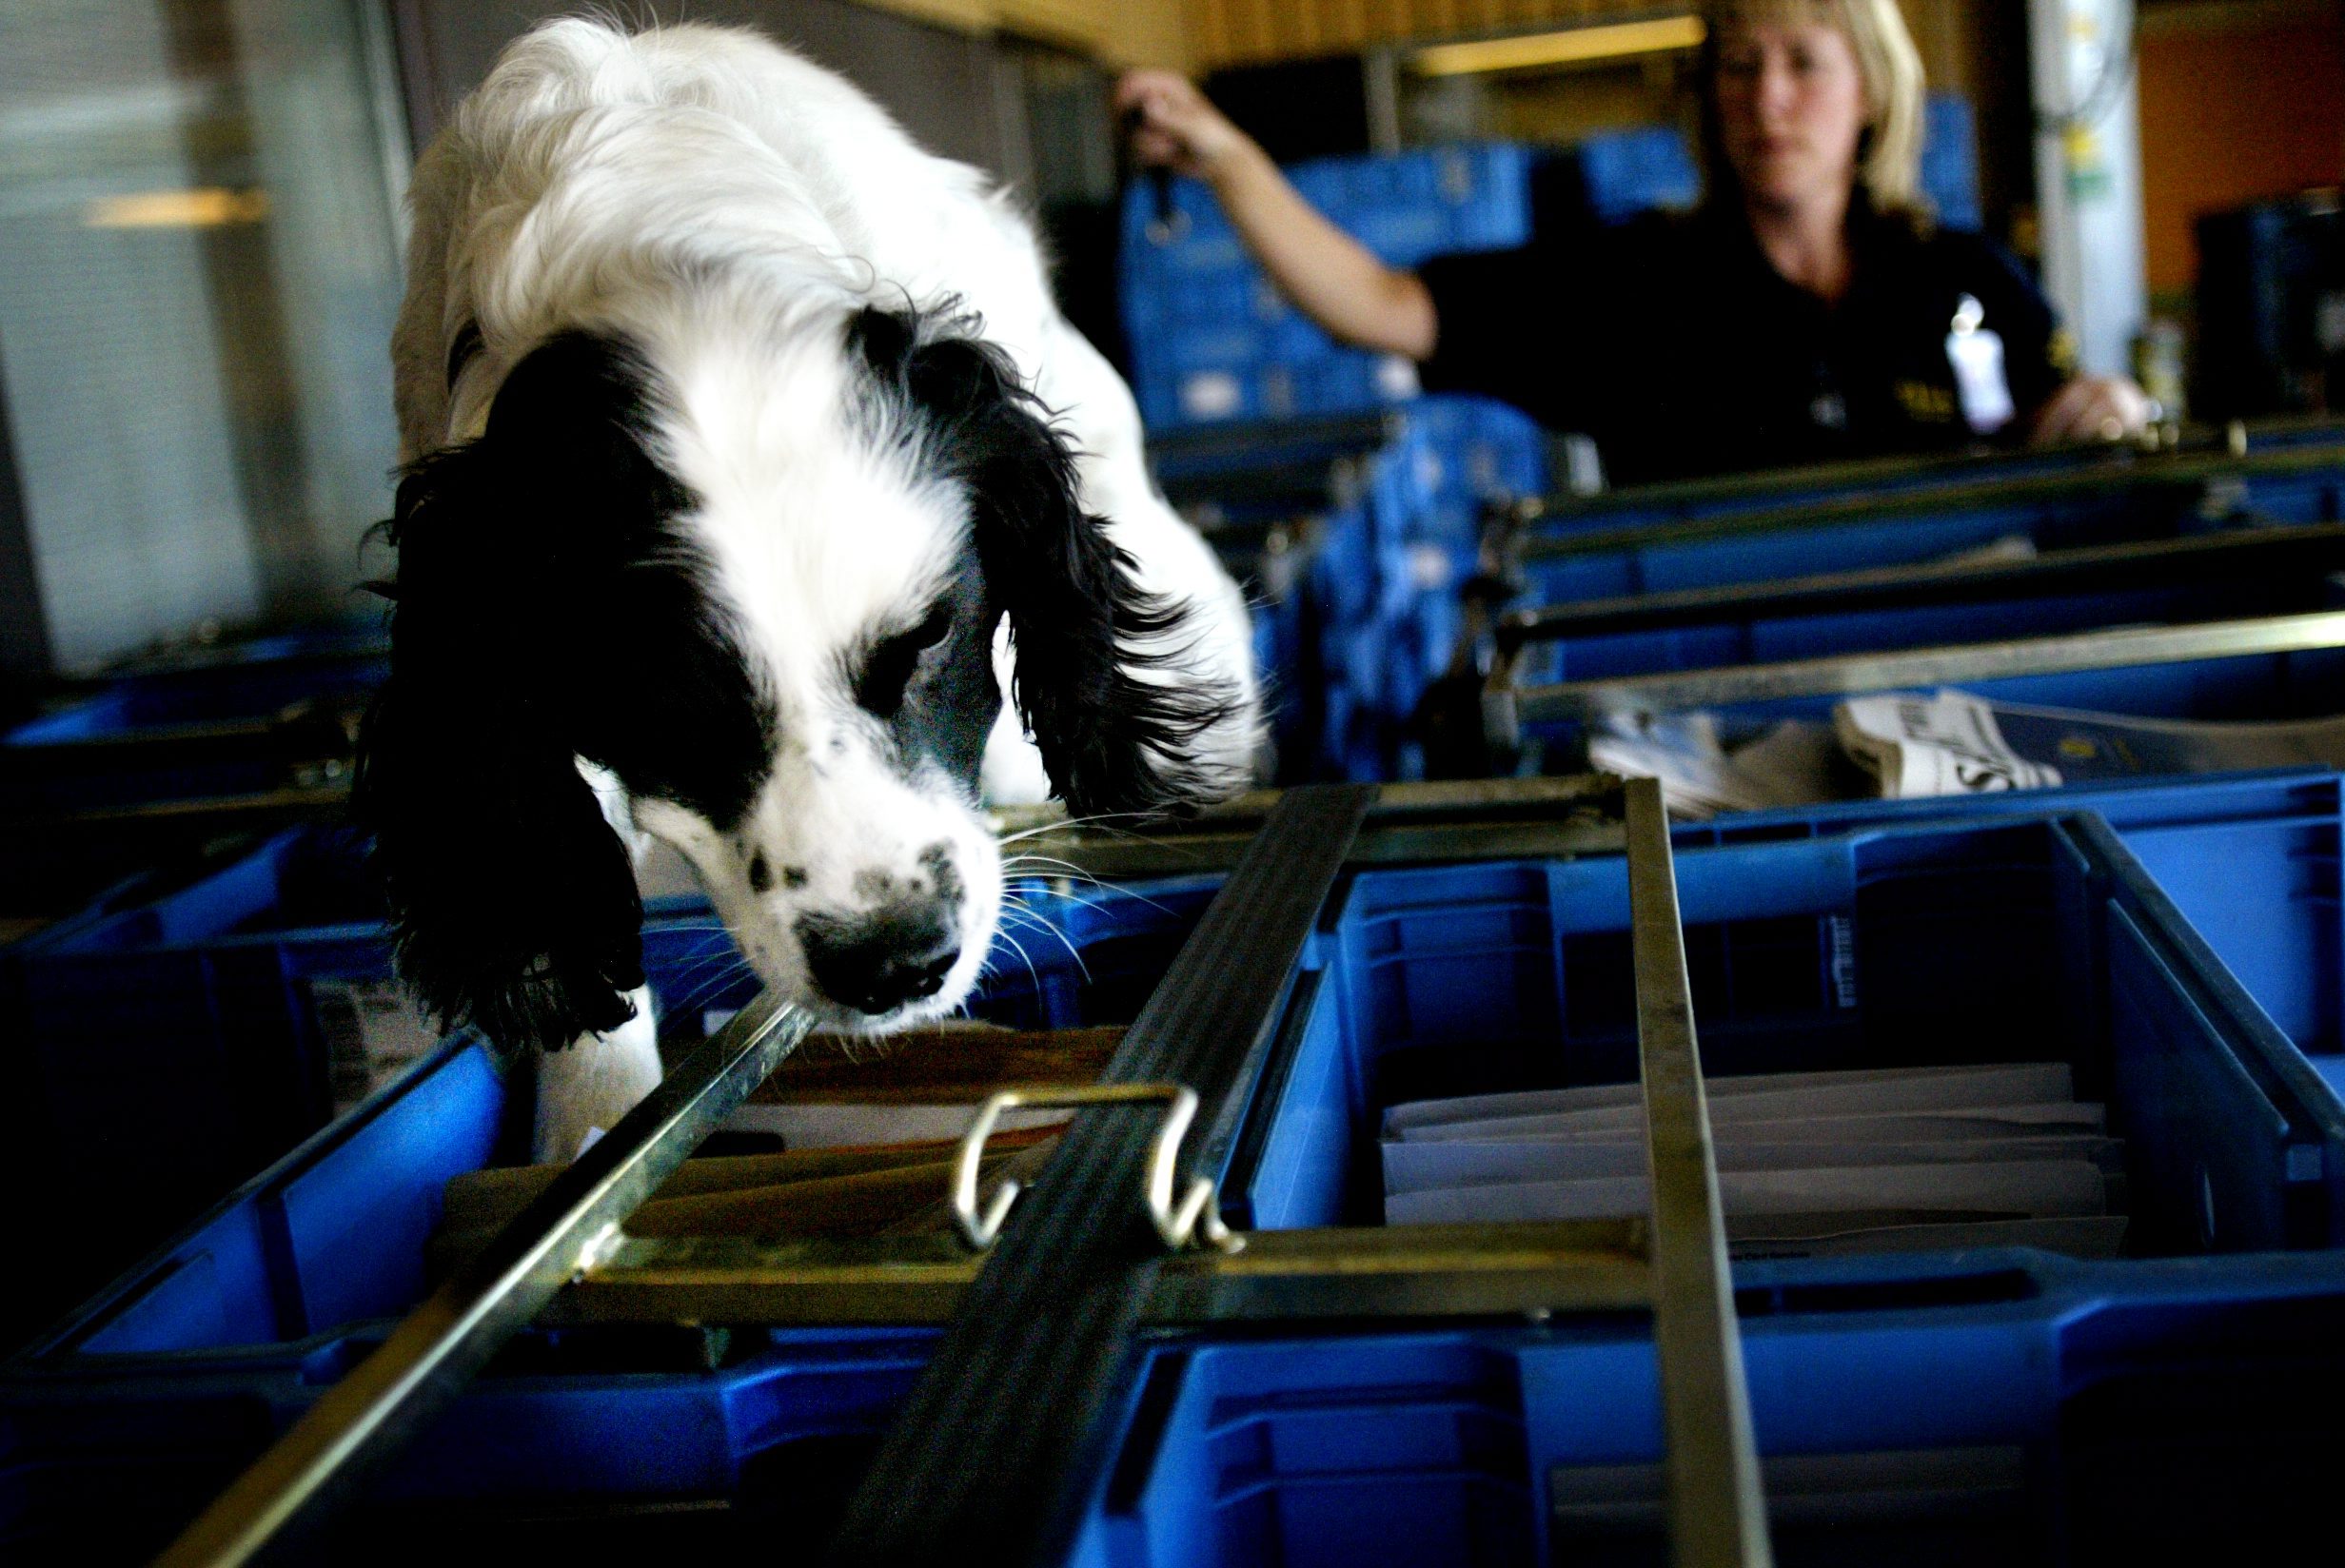 Narkotikahunden Baz har fått utmärkelsen Årets narkotikahund efter att ha hittat knark för 7,4 miljoner kronor. Baz arbetar för det mesta med att snoka igenom post och annan frakt på Arlanda. 